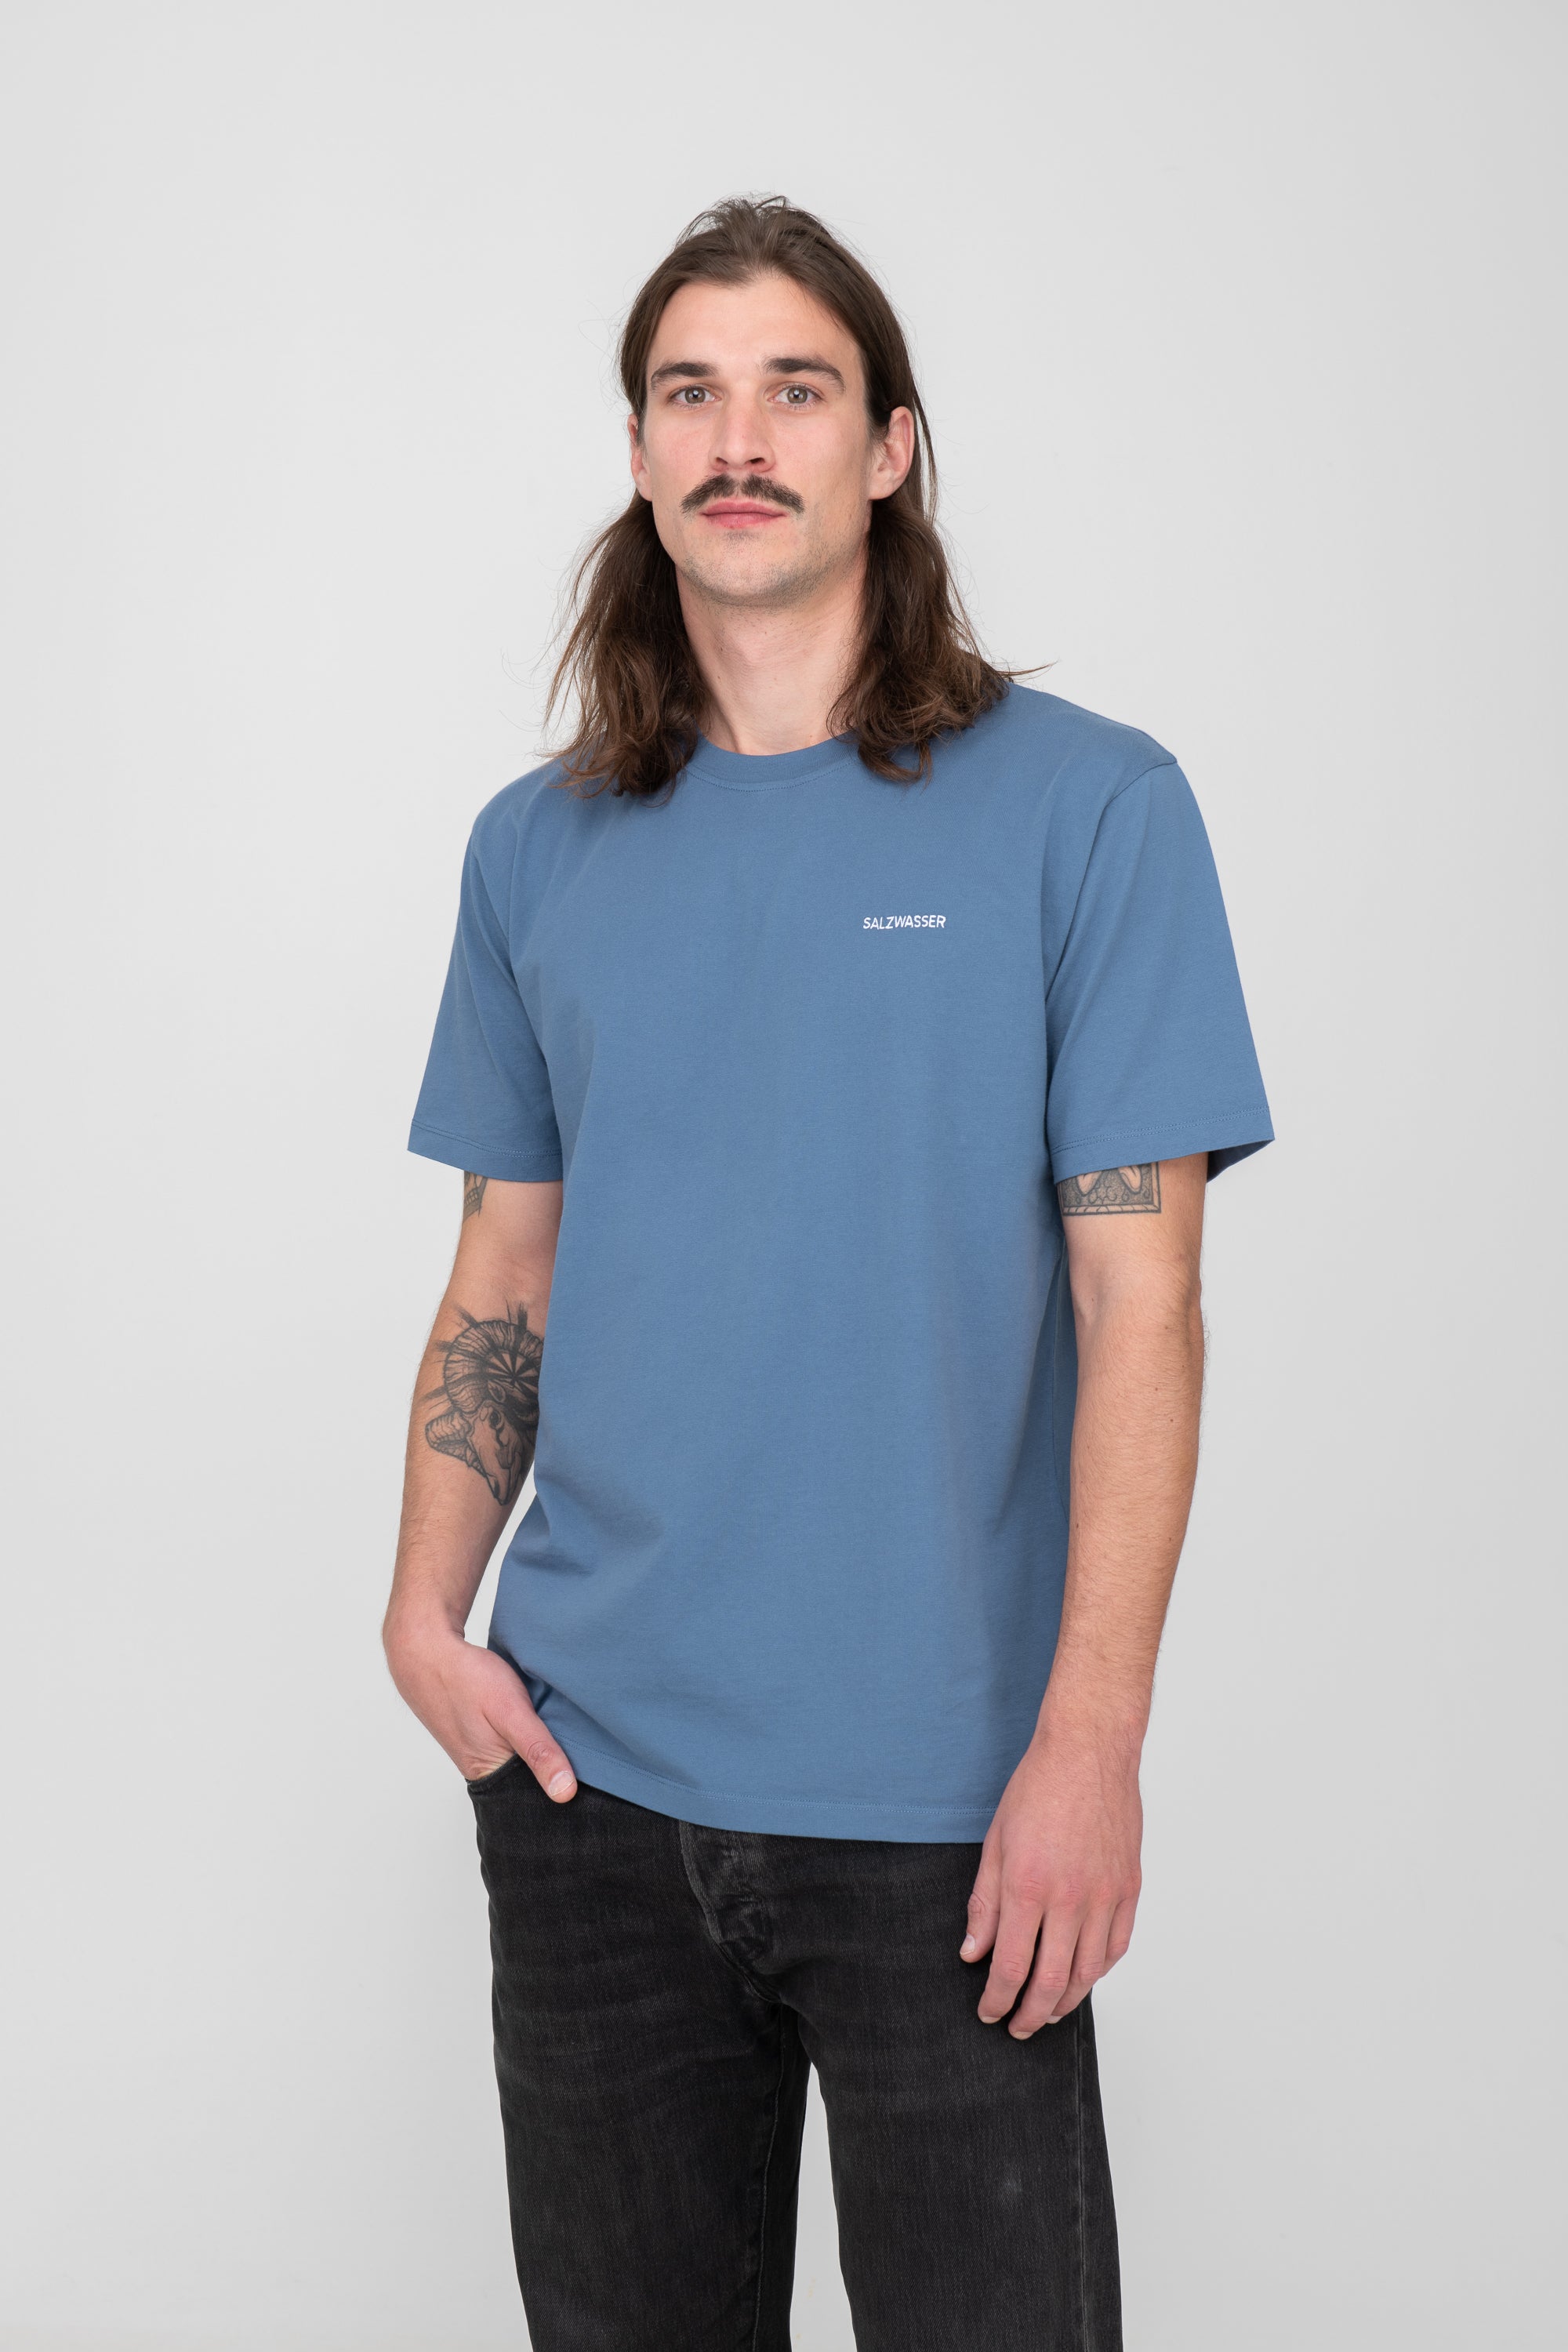 auffallendes T-Shirt in Indigo Blau bei SALZWASSER zu kaufen